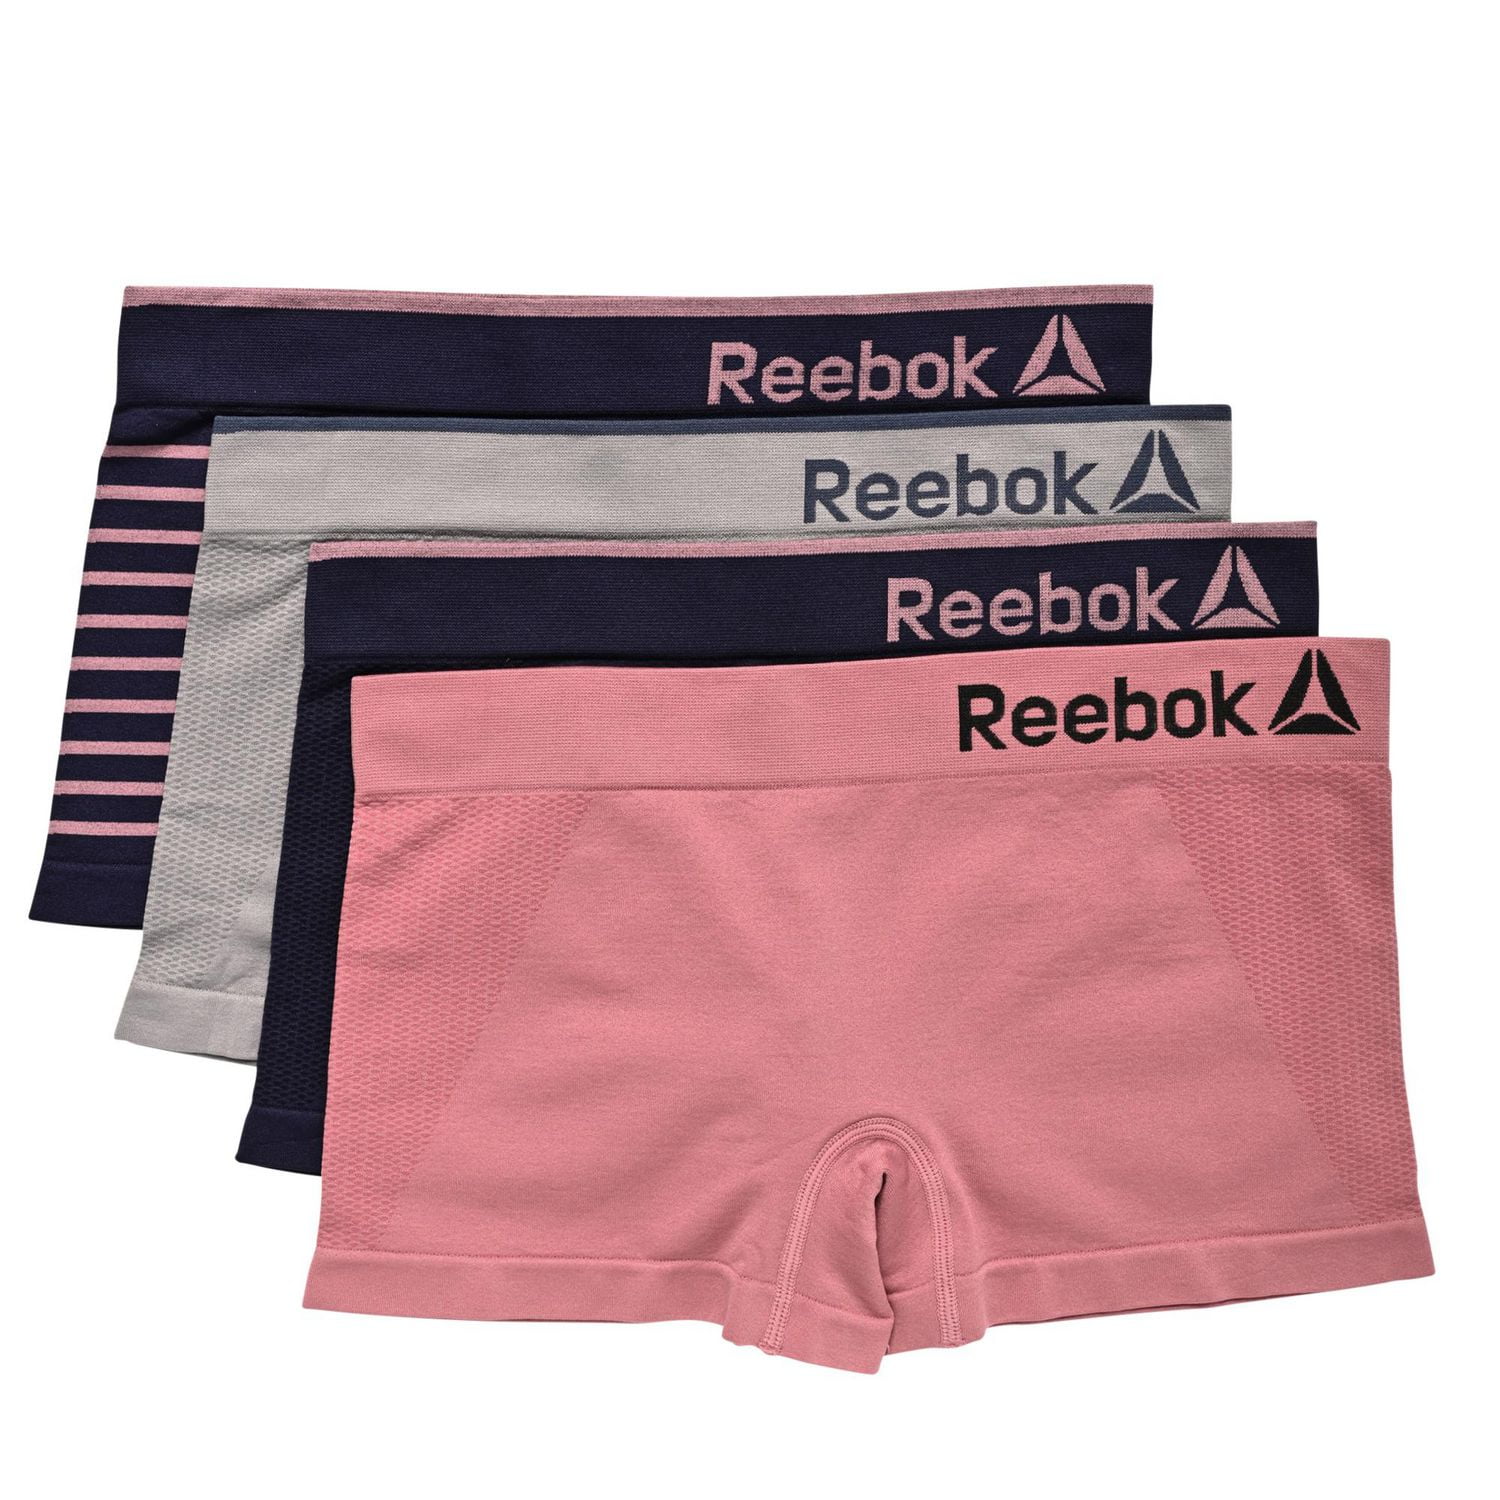 Reebok Women's Underwear Briefs - Clothing